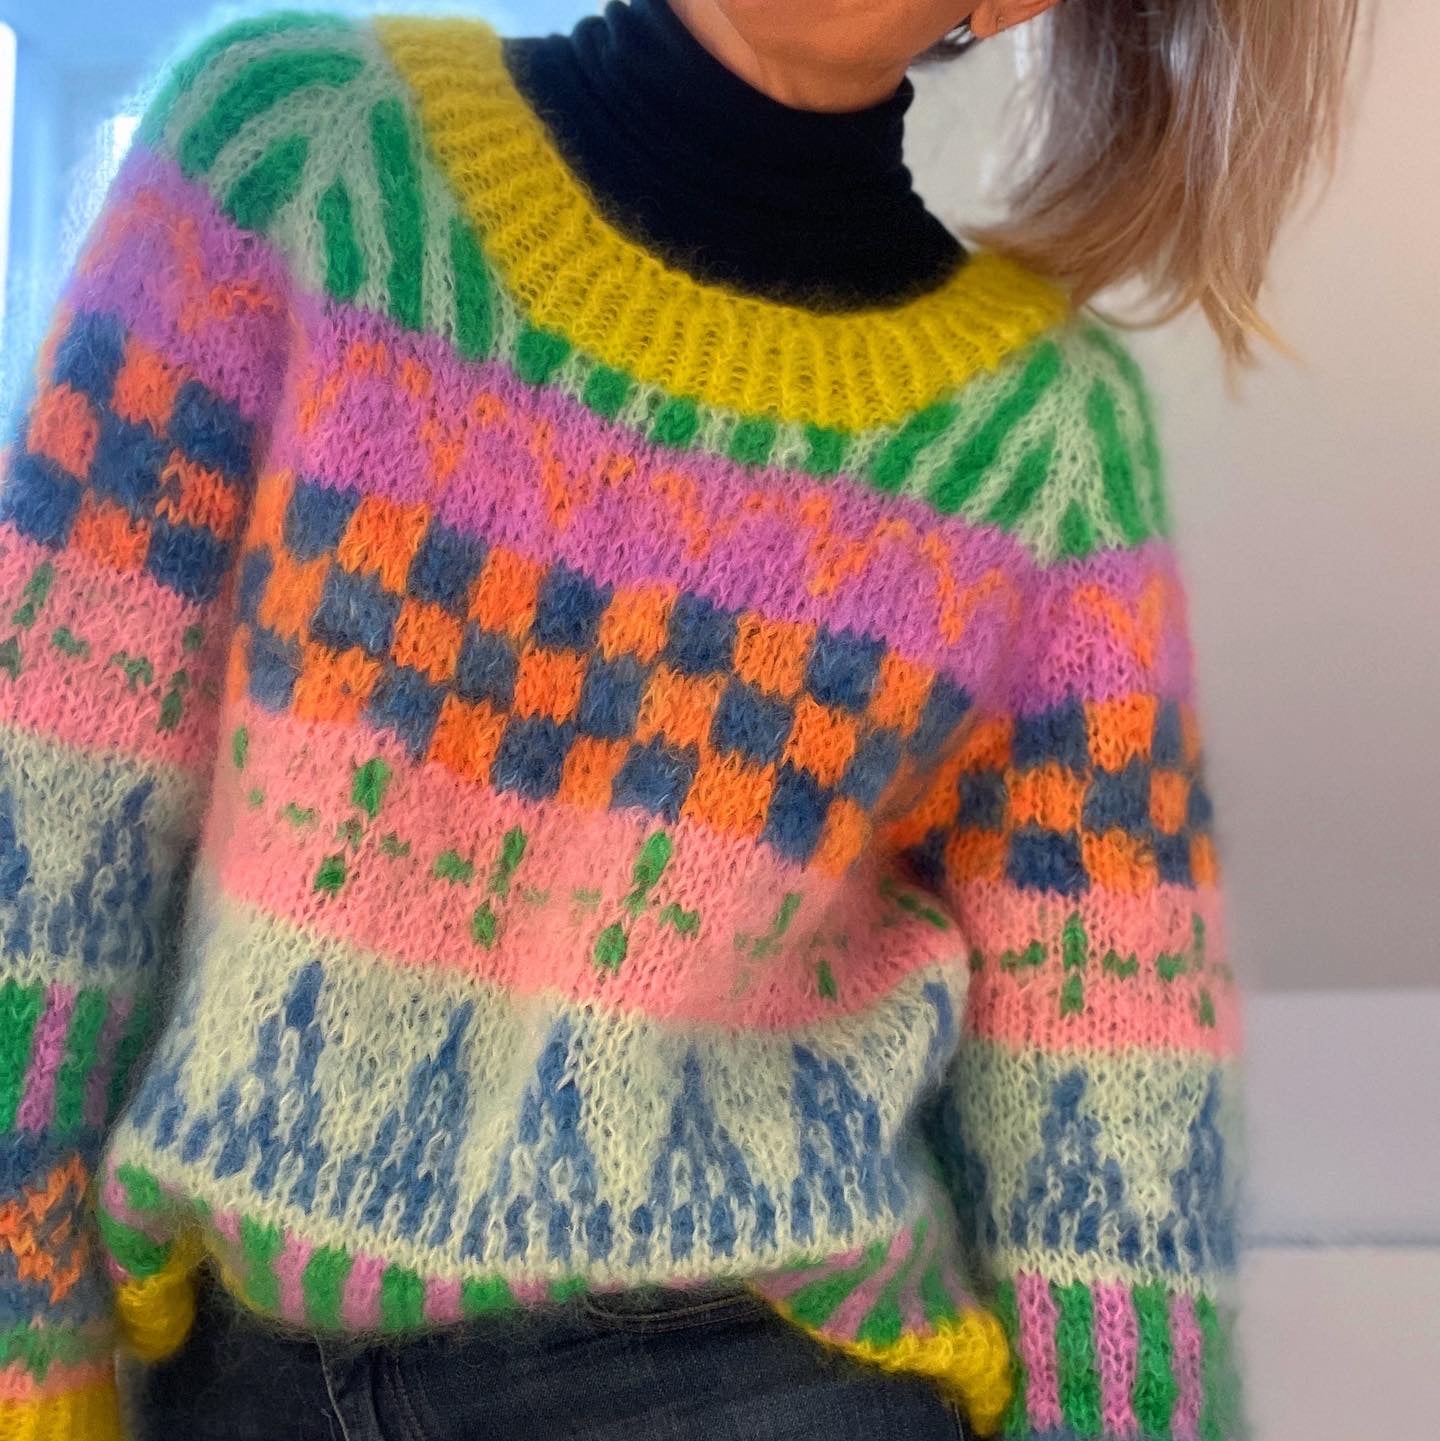 Er du på jagt efter nemme strikkeopskrifter til begynder online og specielt strik sweater til kvinder? Så se vores Farvefin, der er et godt bud på kreativ strik, der er nem at gå til